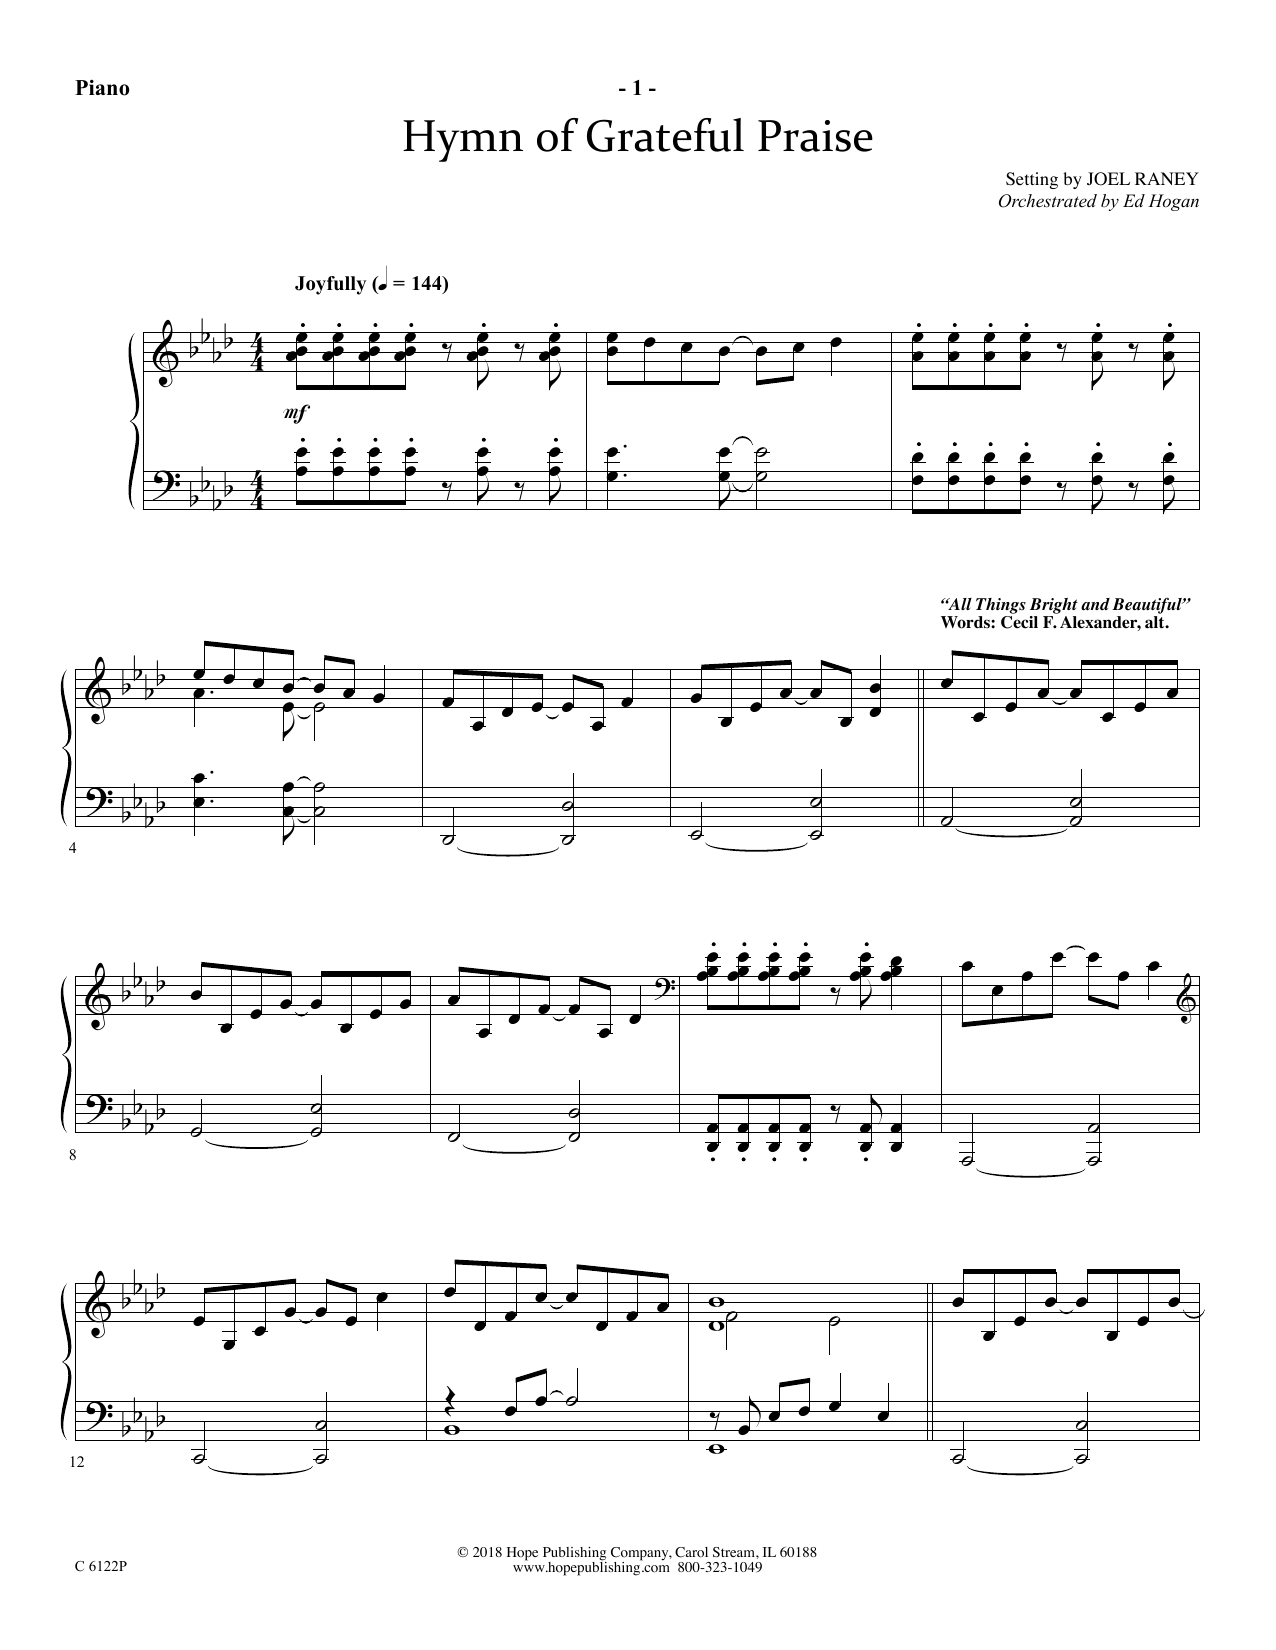 Download Joel Raney Hymn Of Grateful Praise - Piano Sheet Music